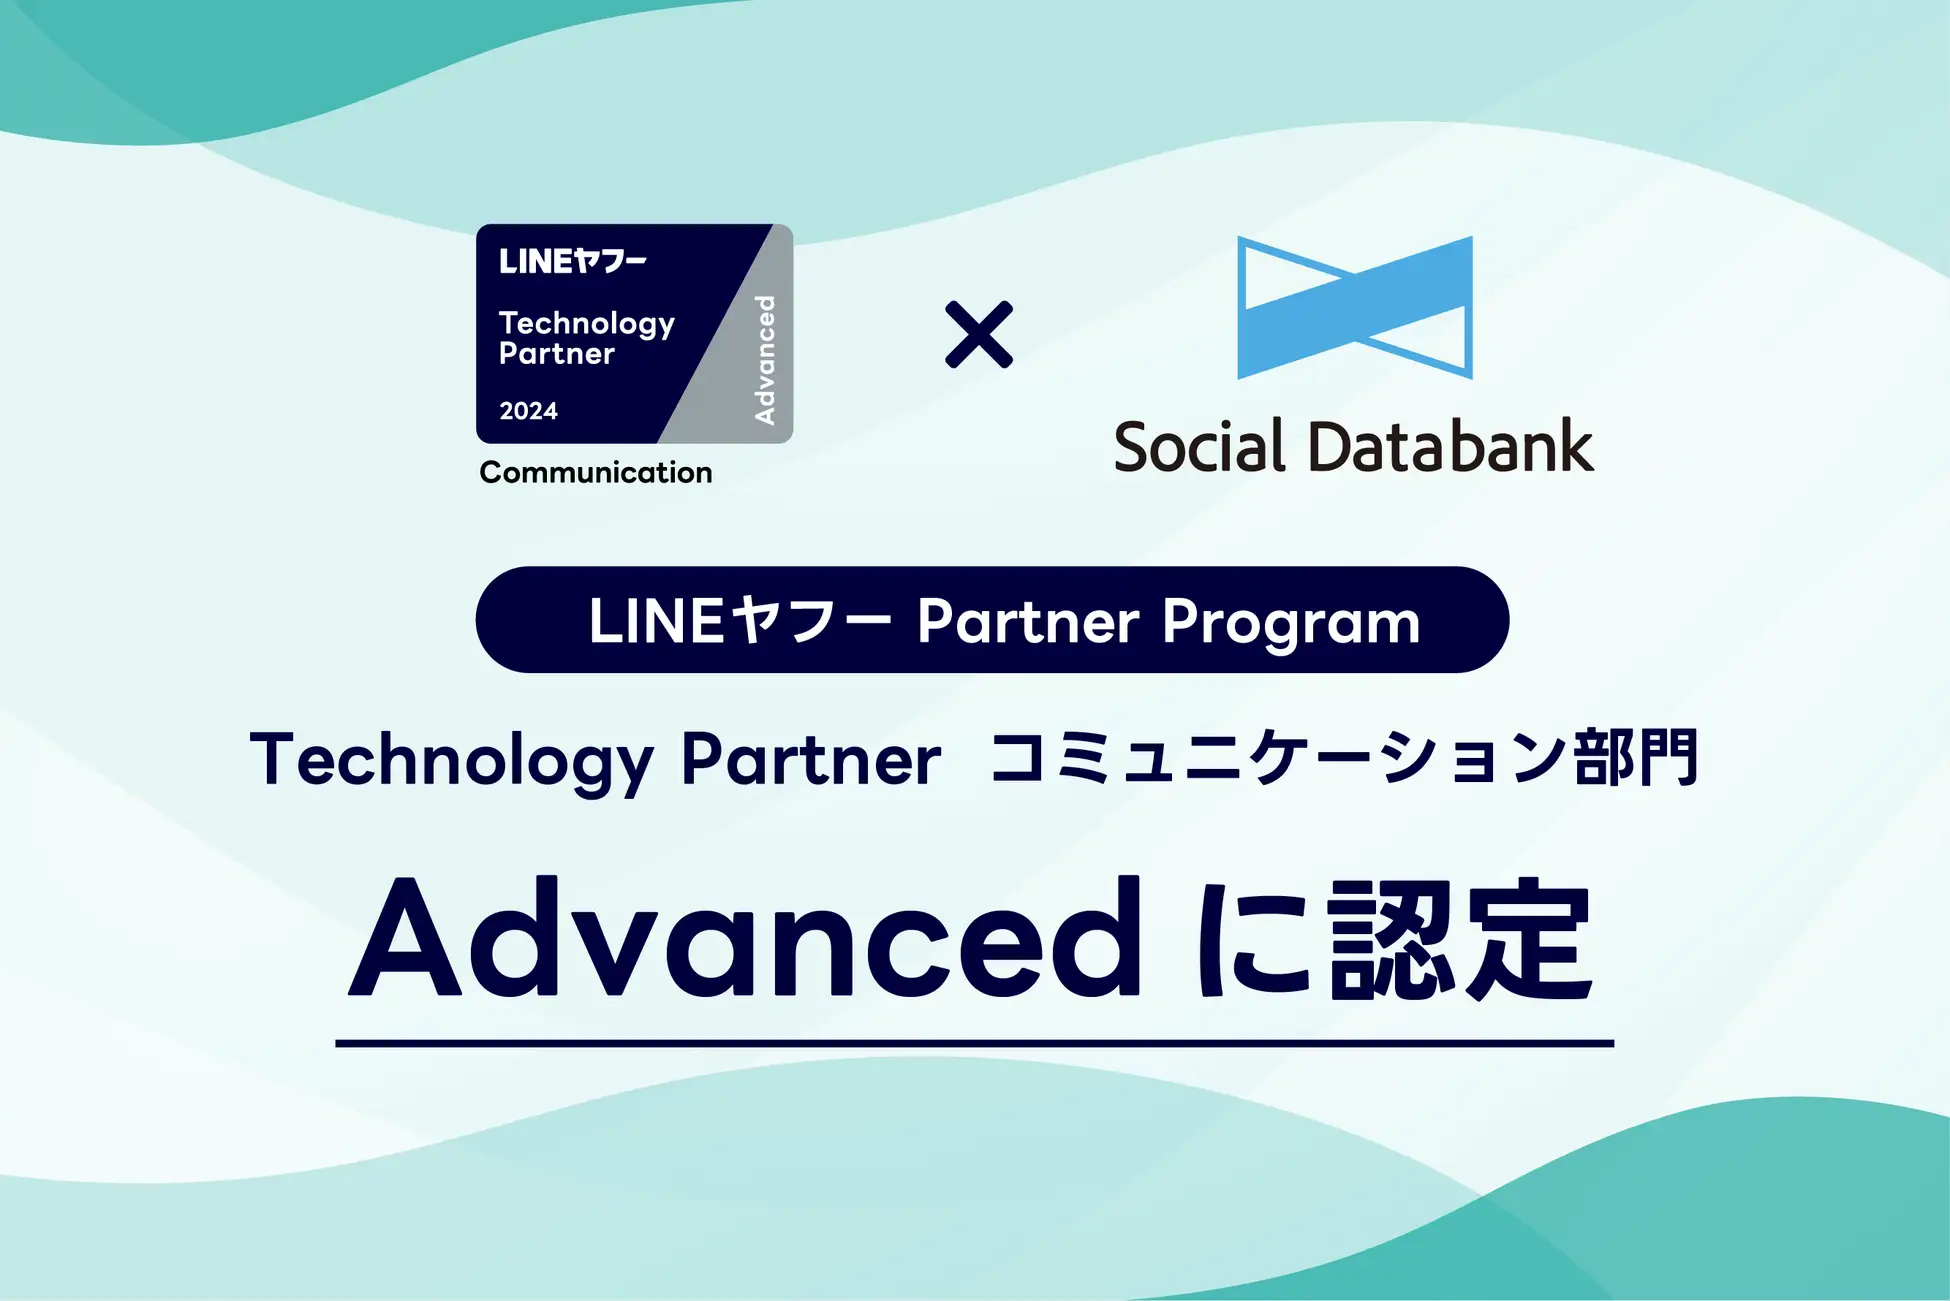 「LINEヤフー Partner Program」において「Technology Partner」のコミュニケーション部門「Advanced」に認定